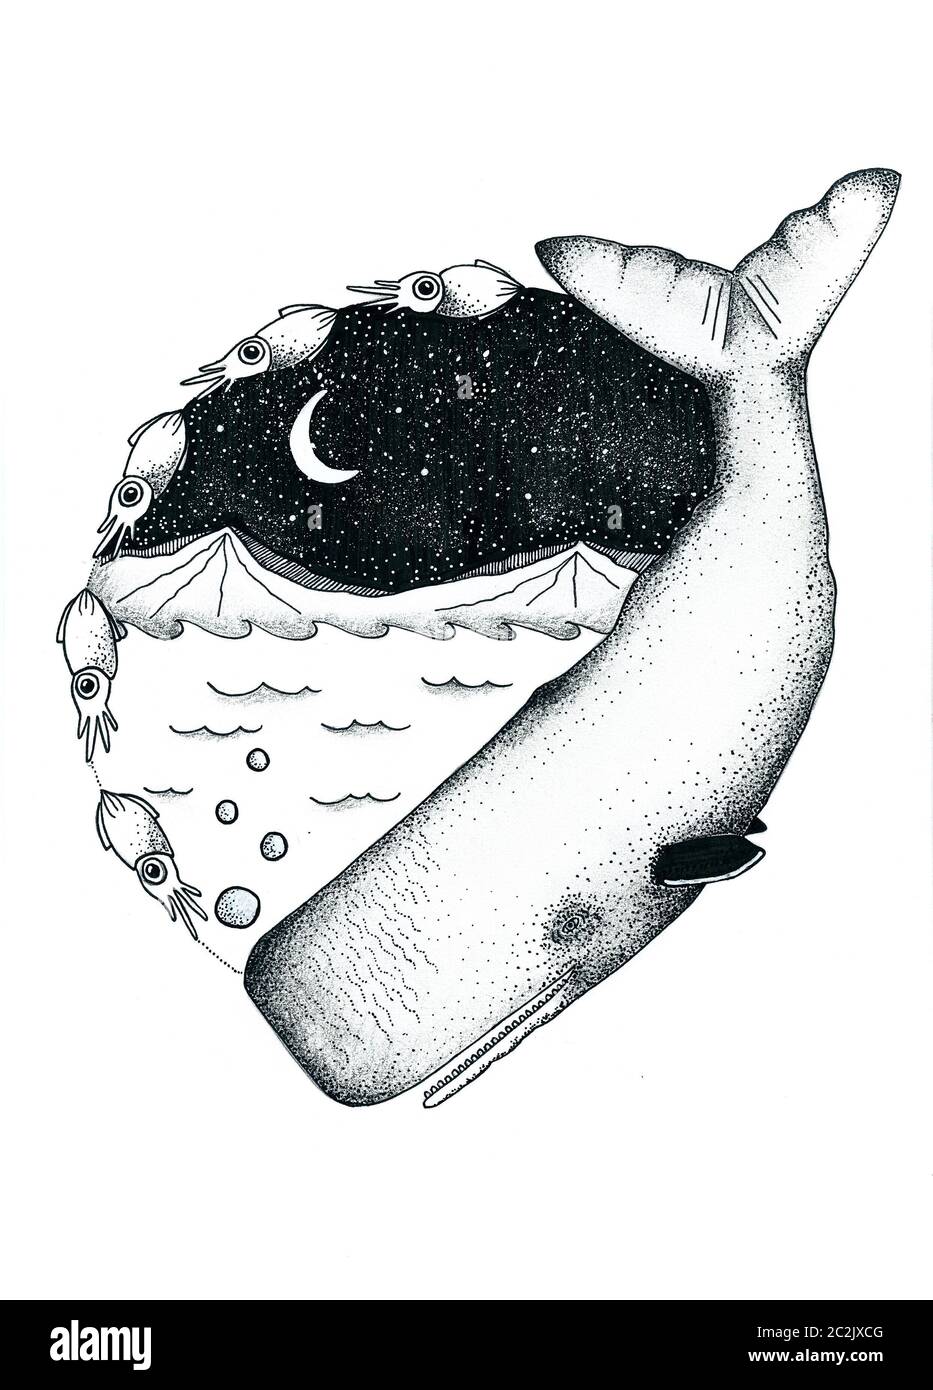 Illustrazione di un balenottero di spermatozoi di notte con montagne sullo sfondo Foto Stock